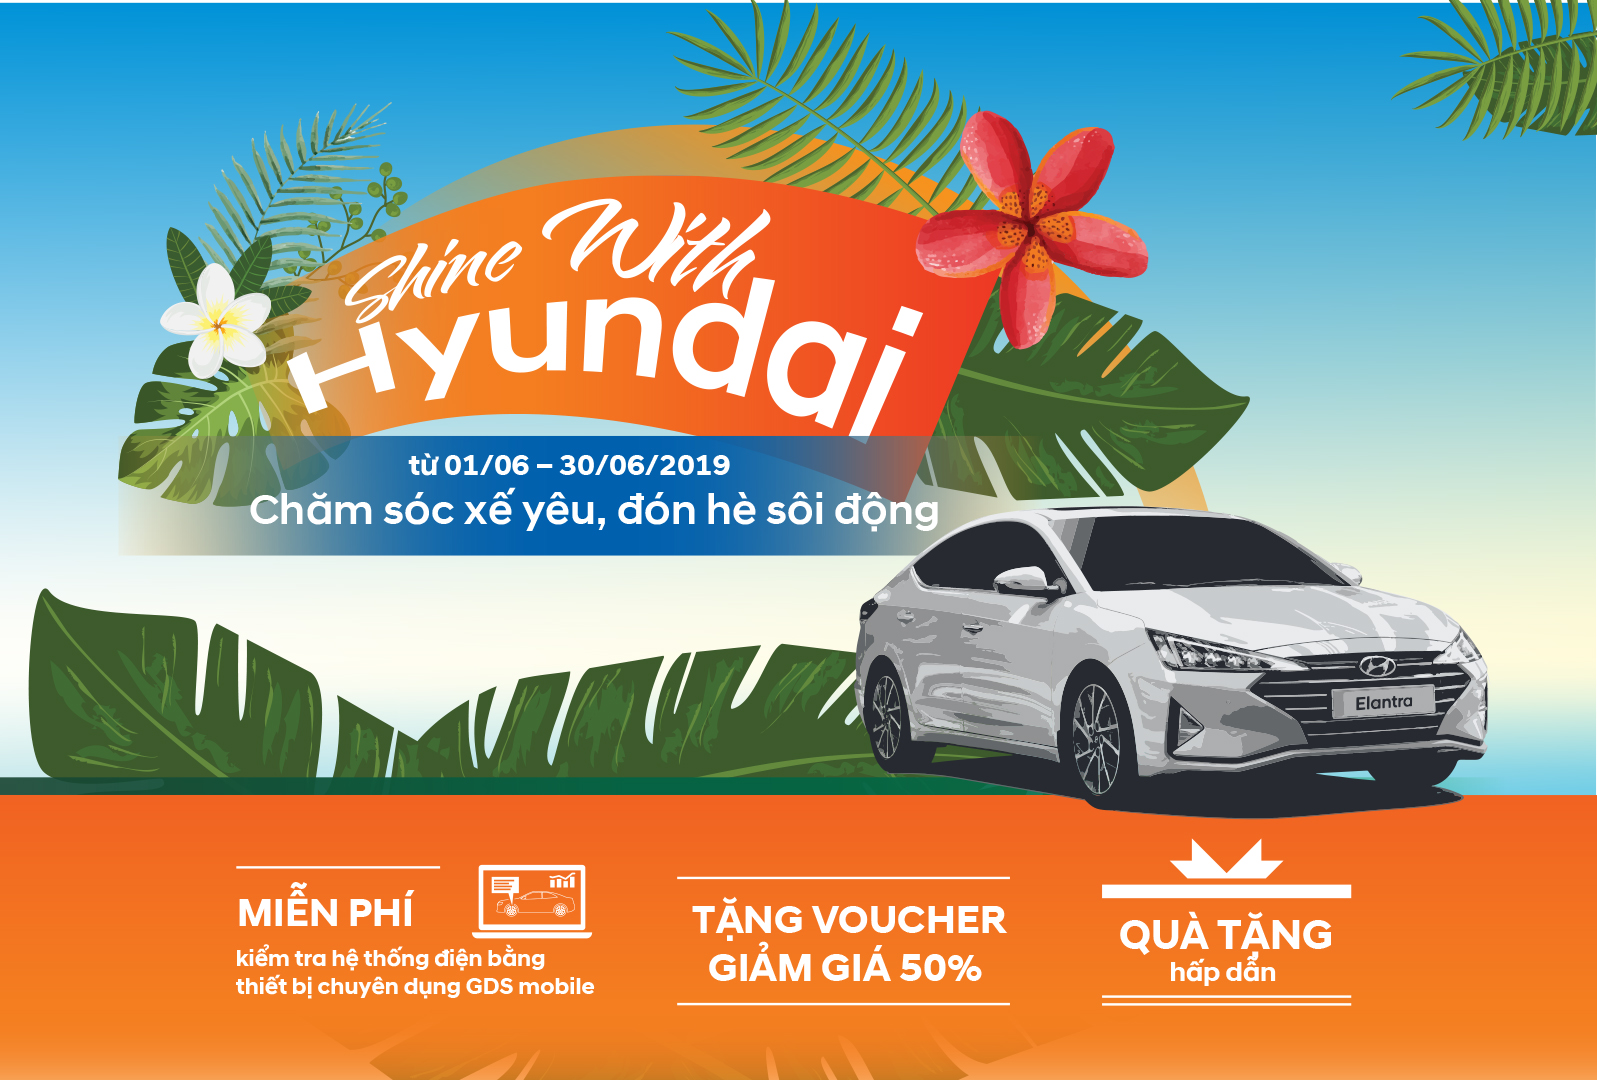 Hyundai Thành Công ưu đãi “chăm sóc xế” cho khách hàng trong tháng 6/2019